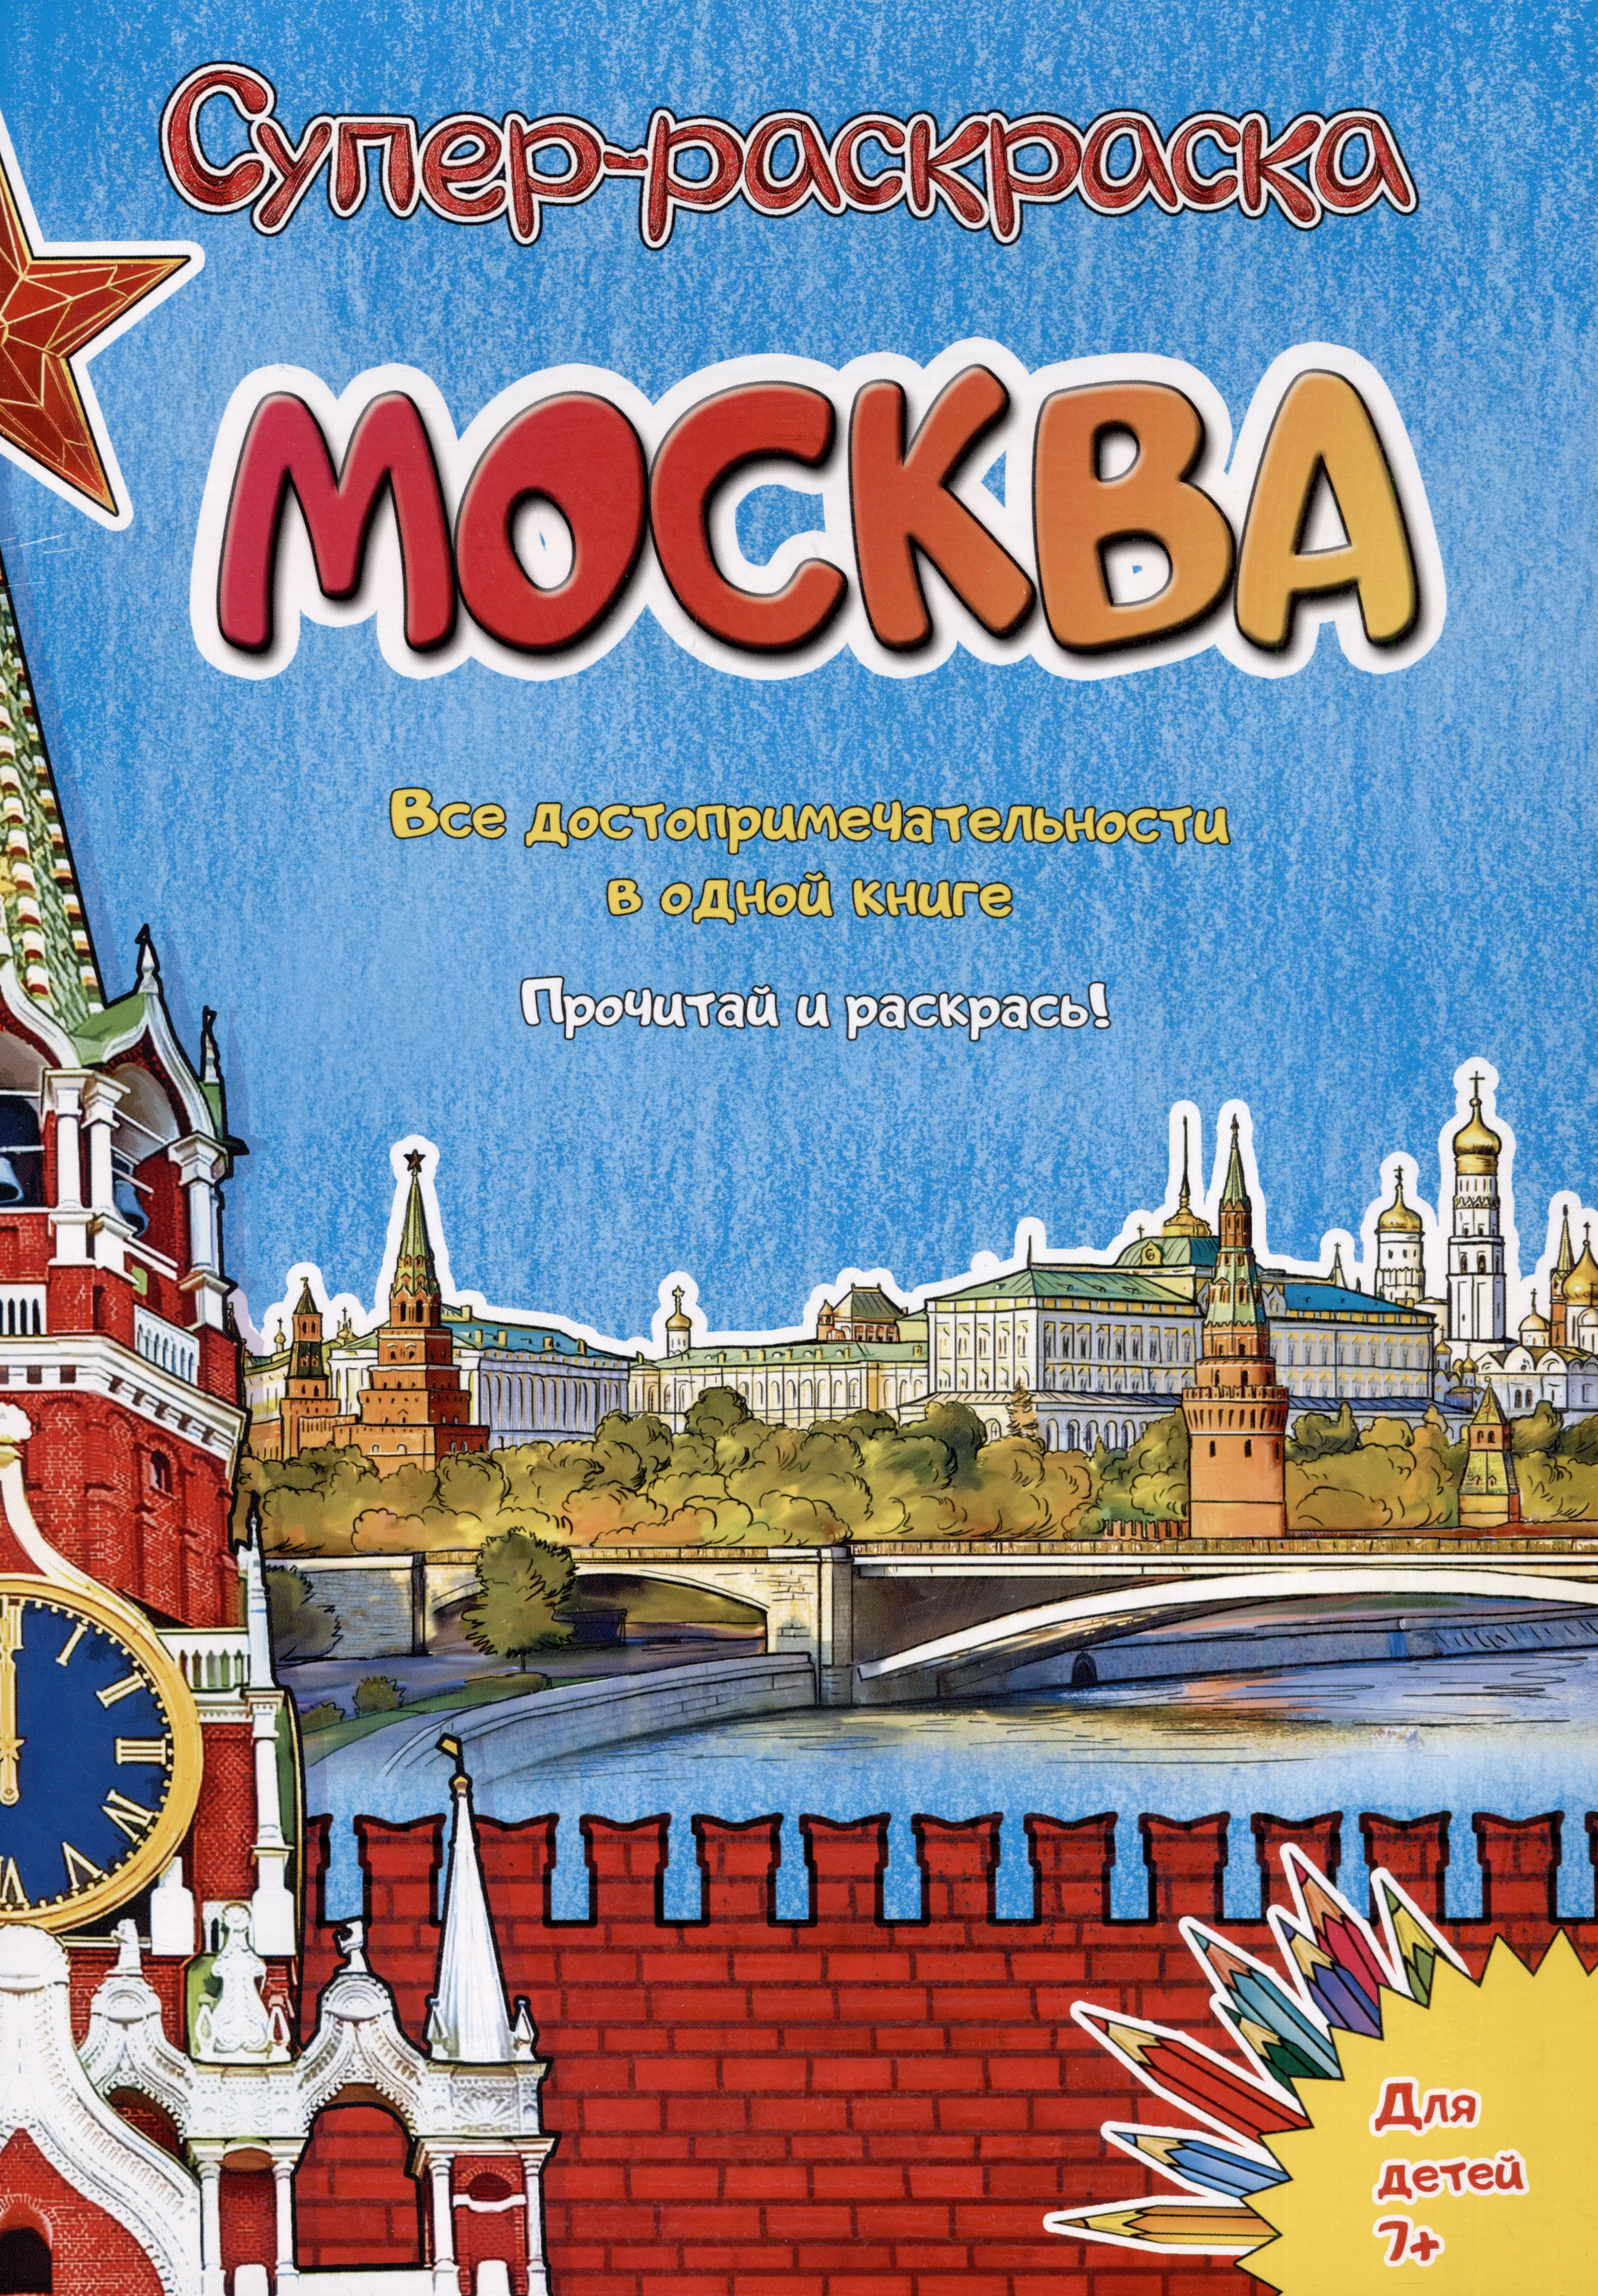 чернова елена москва супер раскраска все достопримечательности в одной книге Москва. Супер-раскраска. Все достопримечательности в одной книге